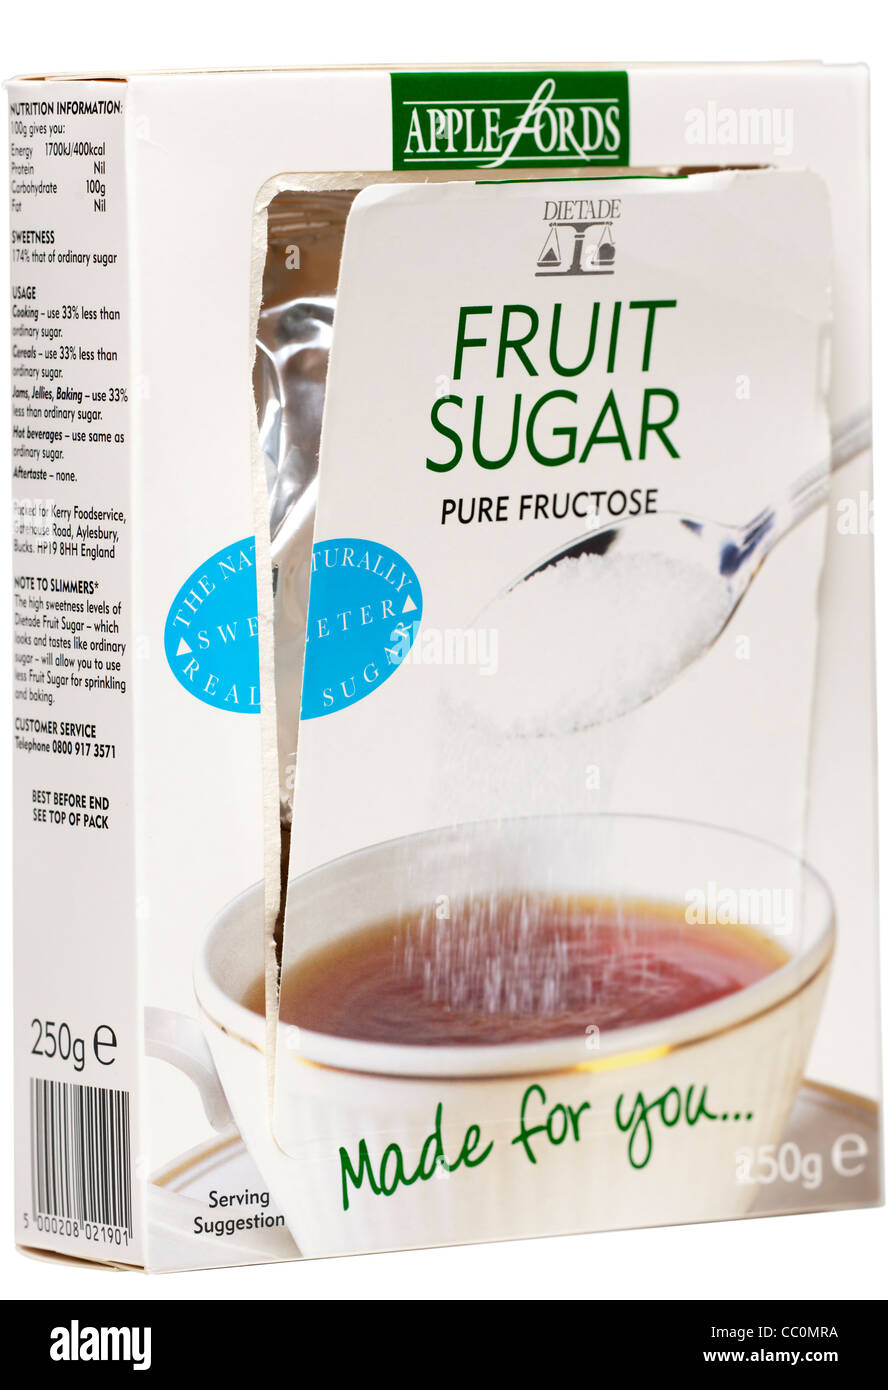 Scatola di Applefords frutta puro fruttosio dello zucchero Foto Stock